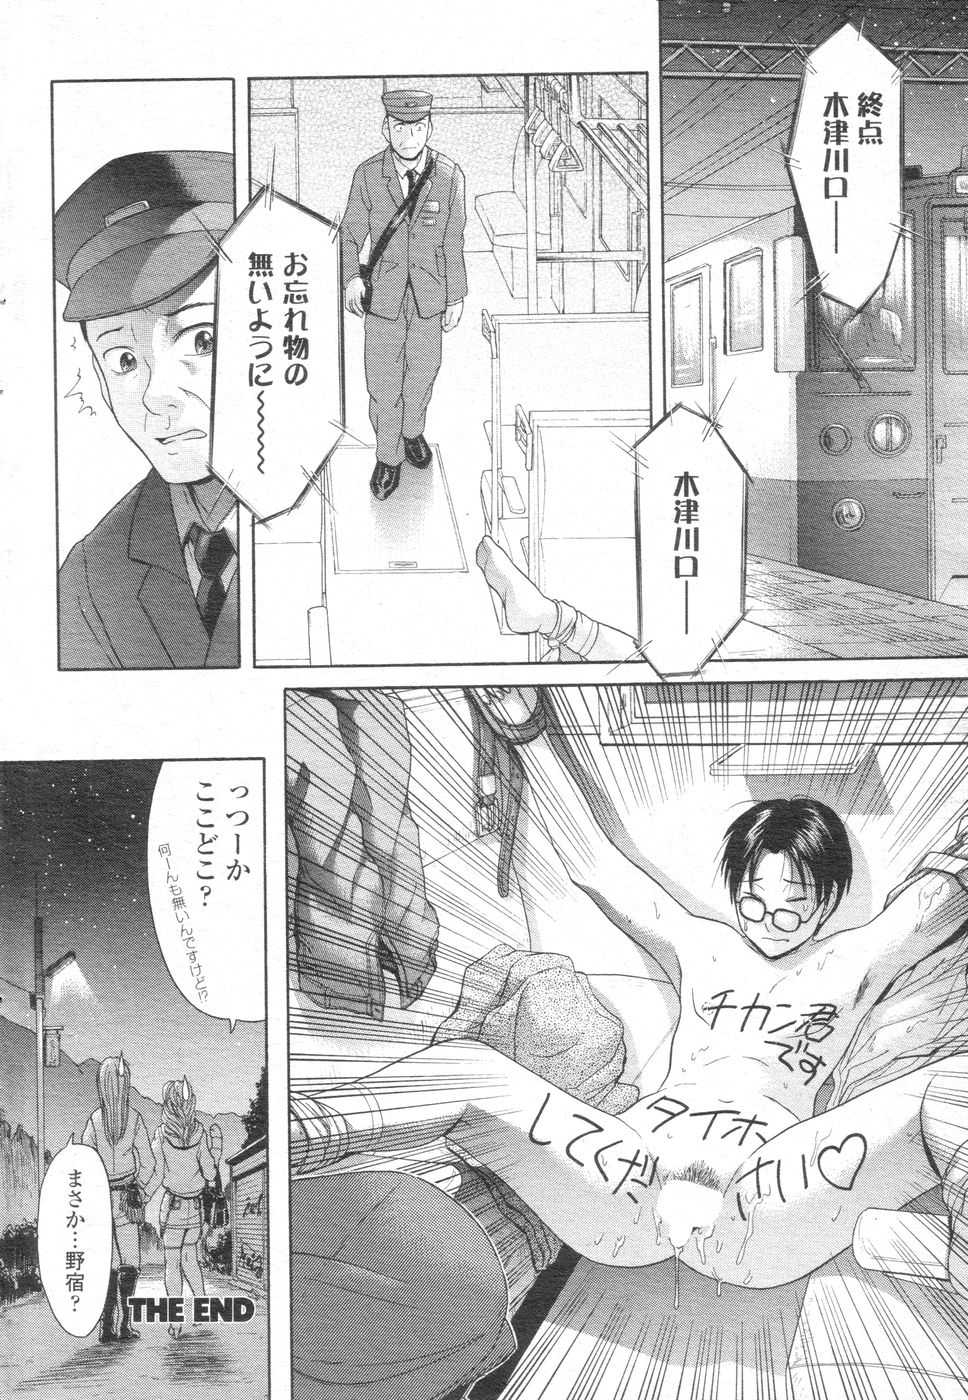 [H-Magazine] Chobekomi Vol.07 Jun. 2007 (Tsukitaki) - Page 35